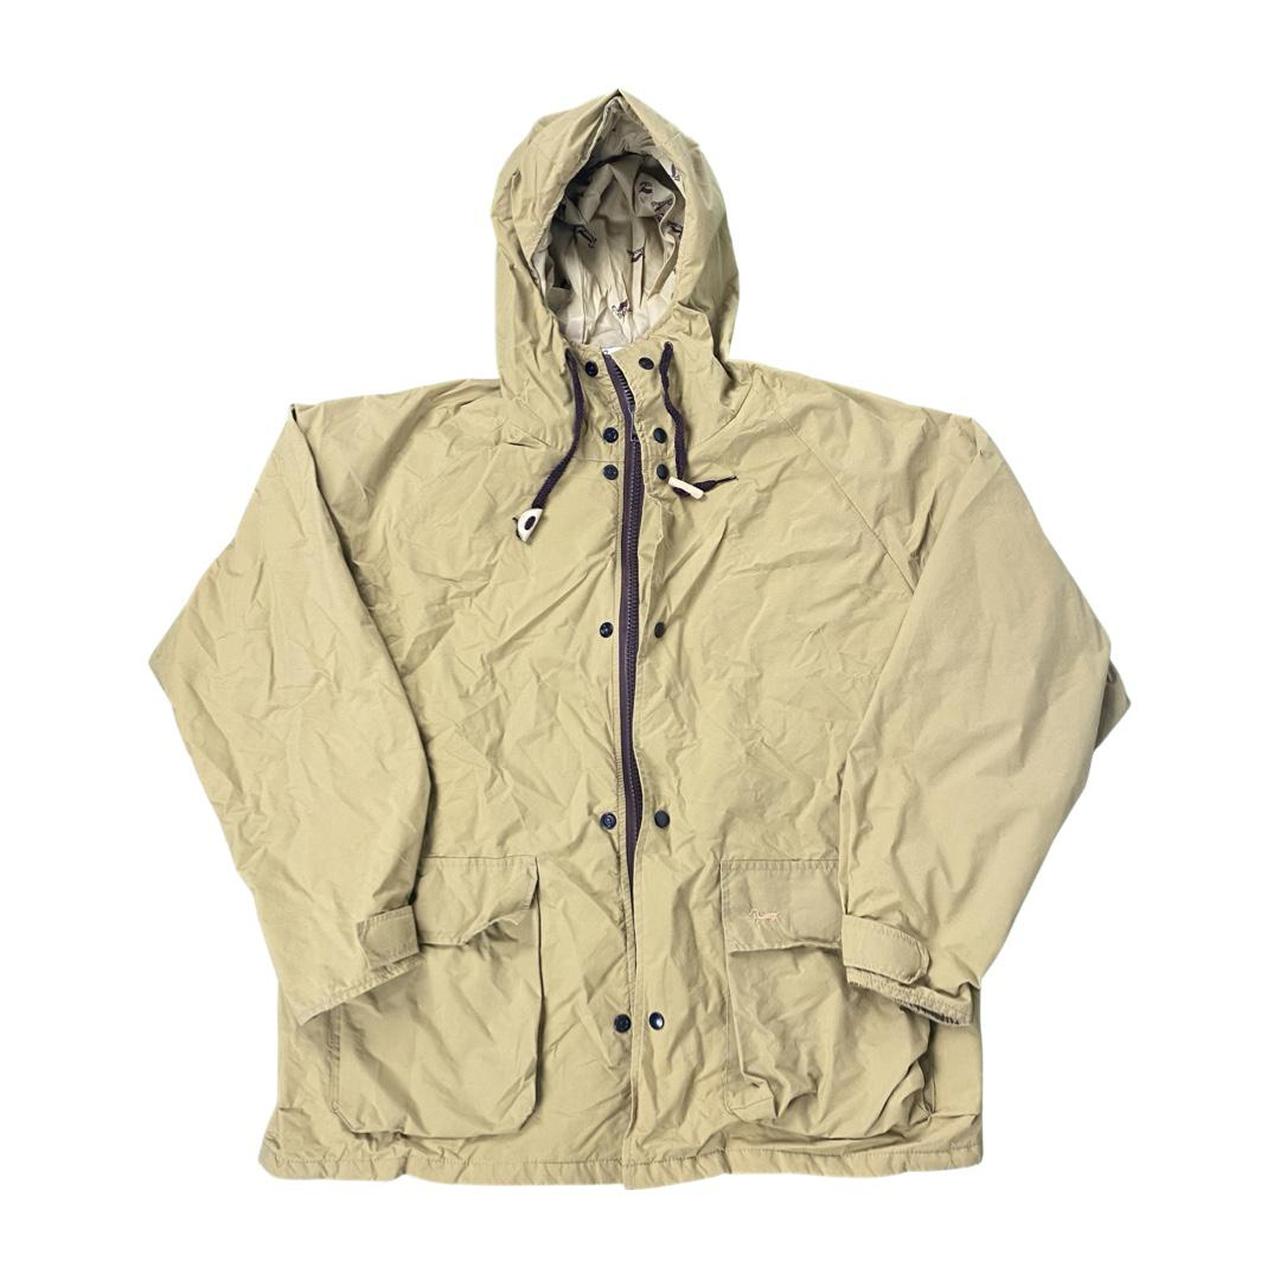 Vintage Duxbak hooded rain jacket 26x27 ️ Size large... - Depop